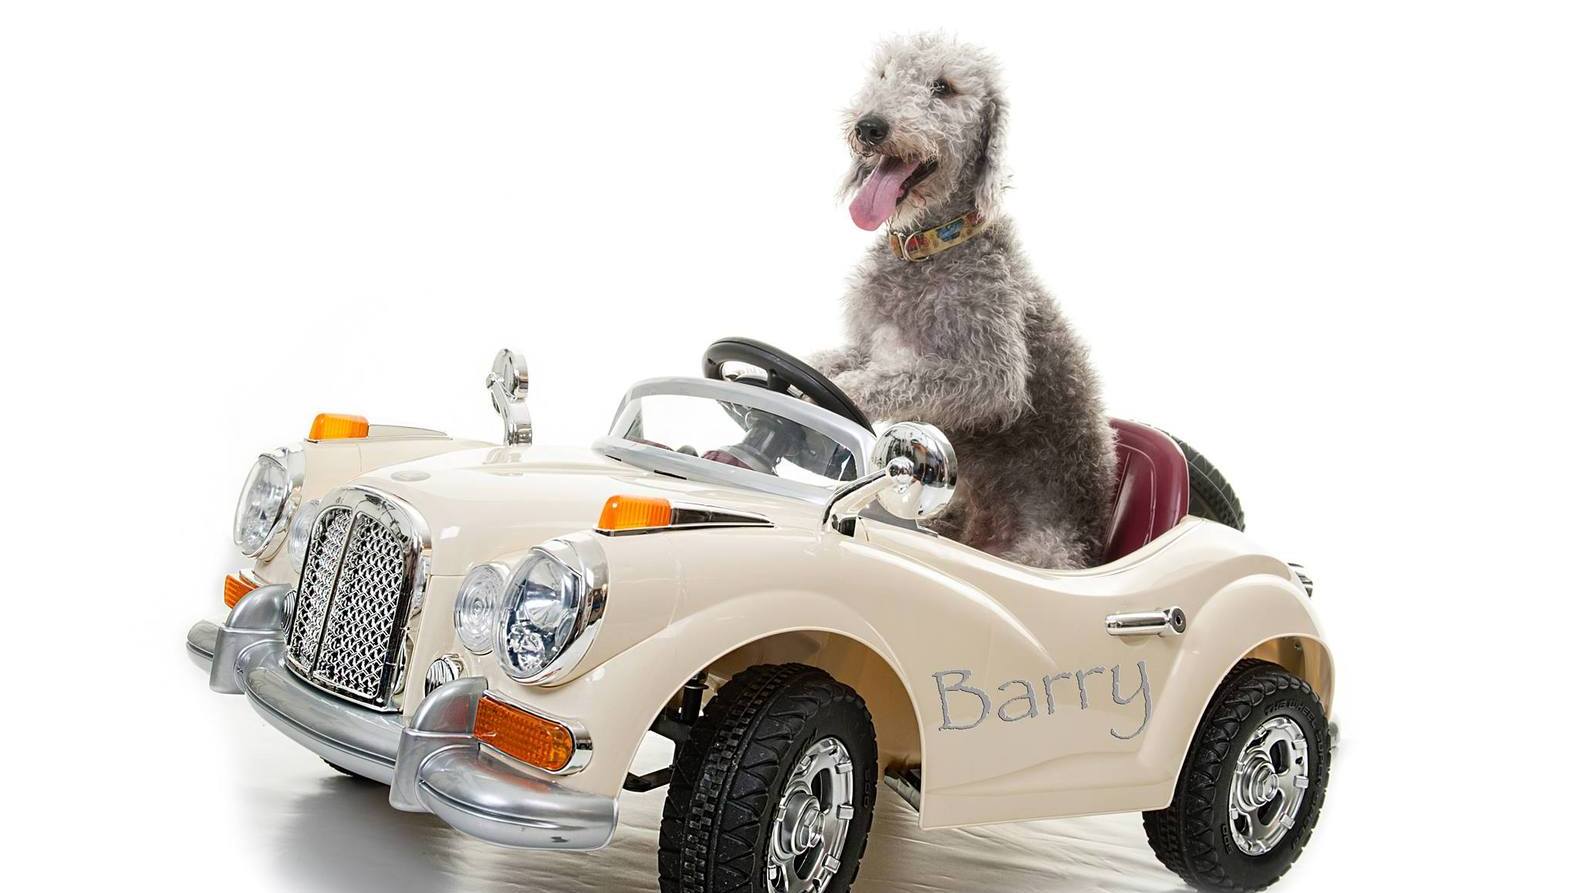 Engelse hond rijdt rond in eigen mini Rolls Royce